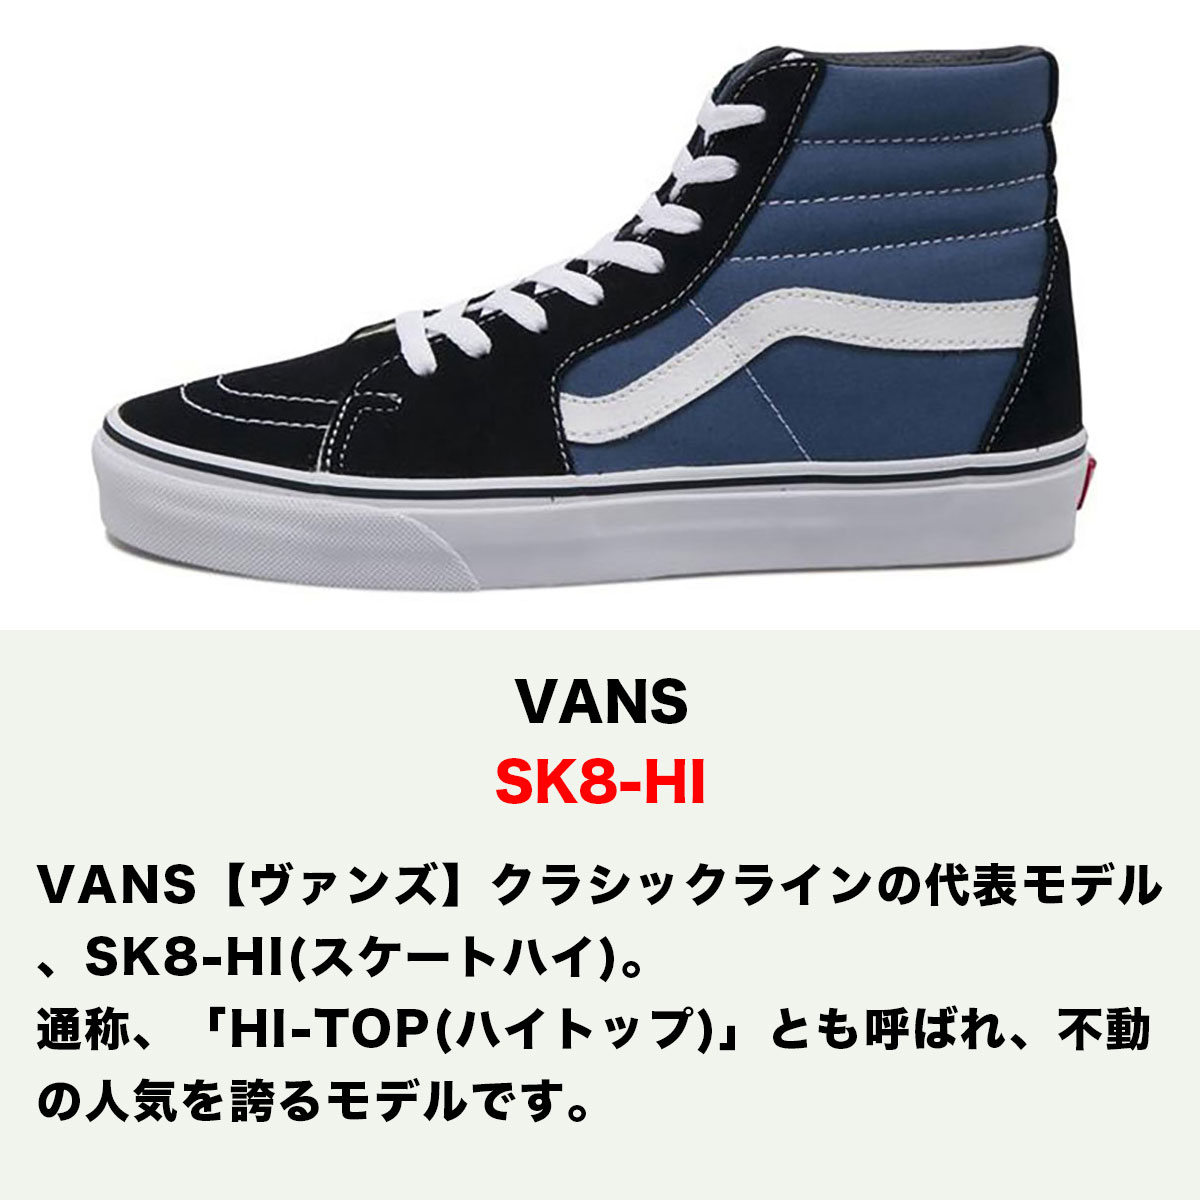 VANS SK8-Hi (28cm) ハイカット スニーカー ネイビー シューズ